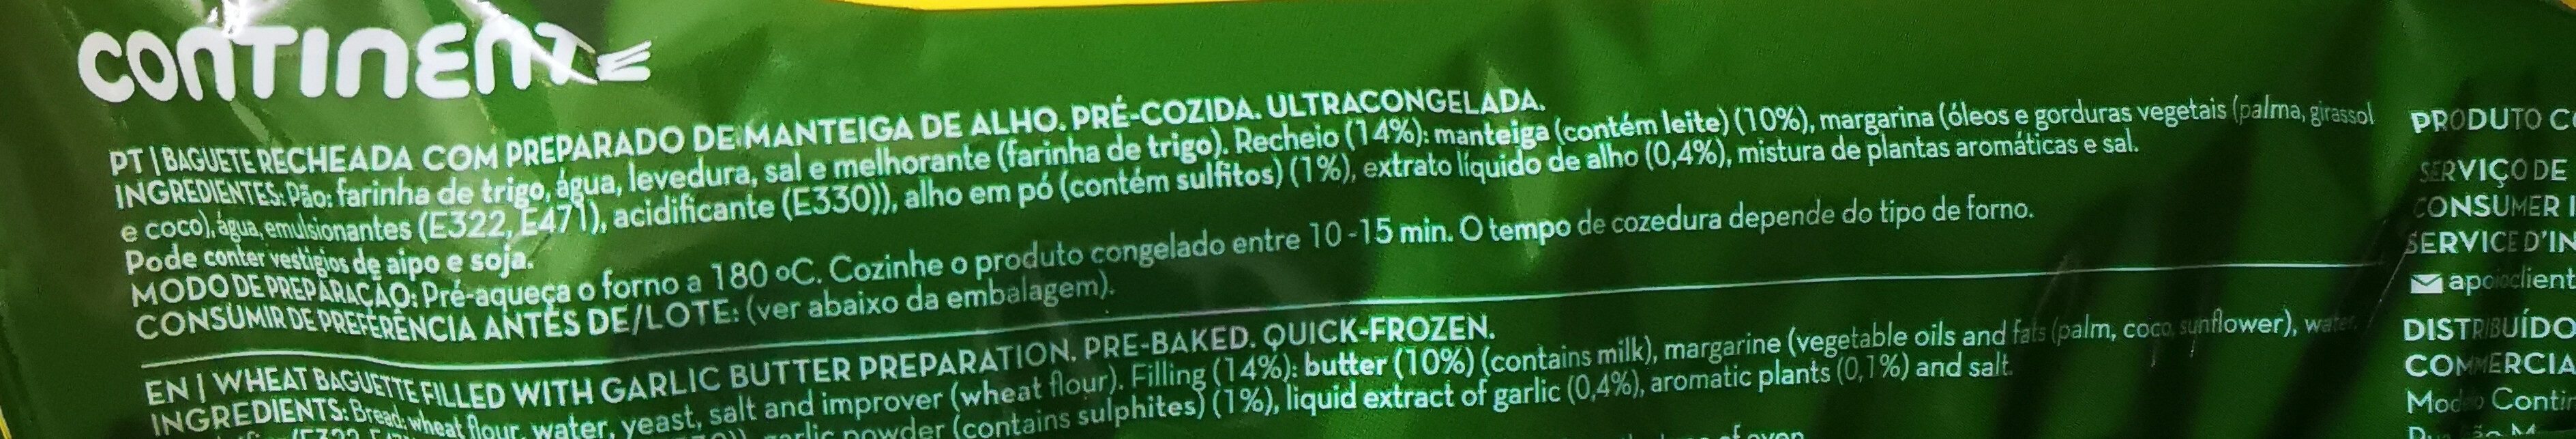 pão de alho - Ingredients - pt